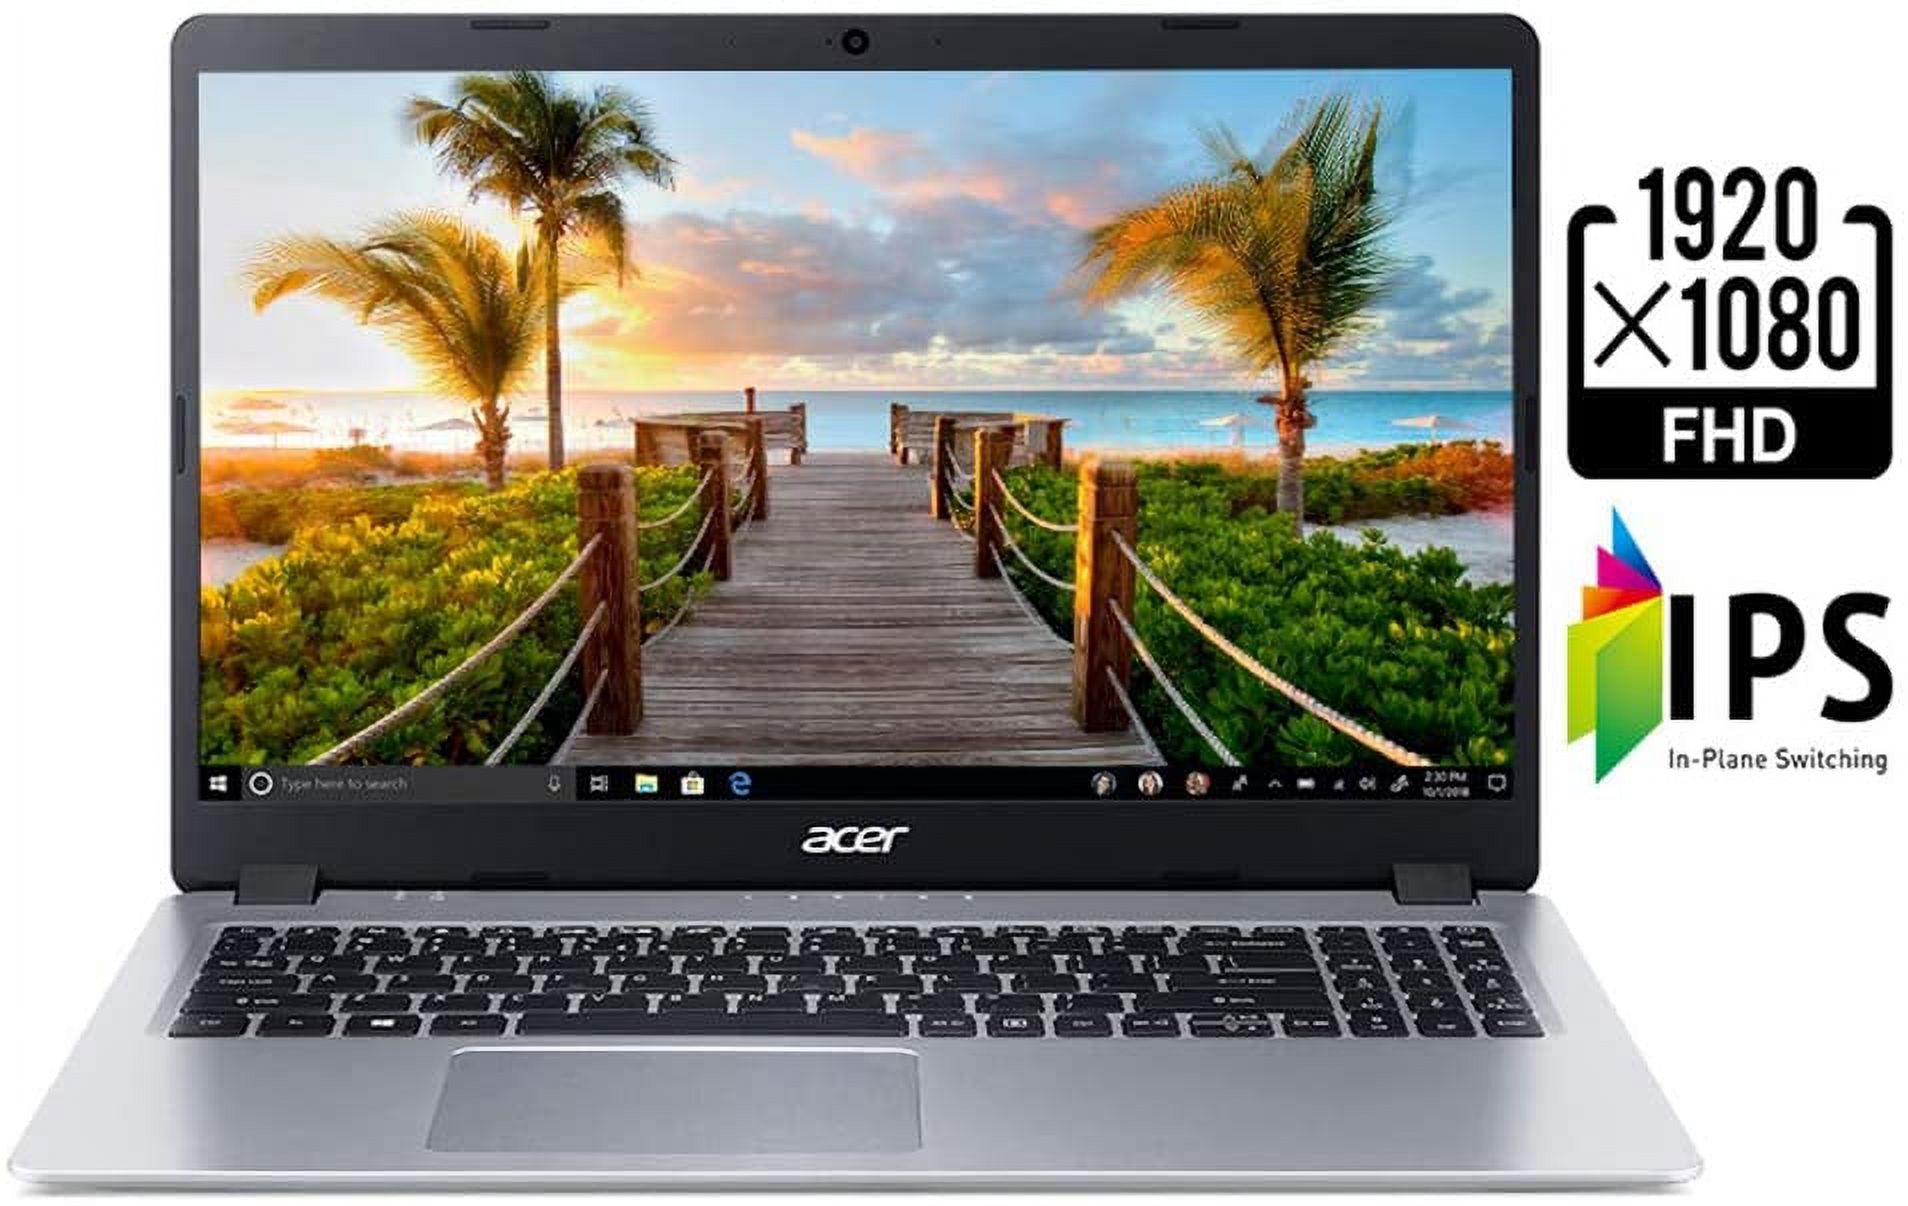 Acer Aspire 5 15.6" FHD PC Laptop, AMD Ryzen 3 3200U, 4GB RAM, 128GB SSD, Windows 10, Silver, A515-43-R19L - image 2 of 3